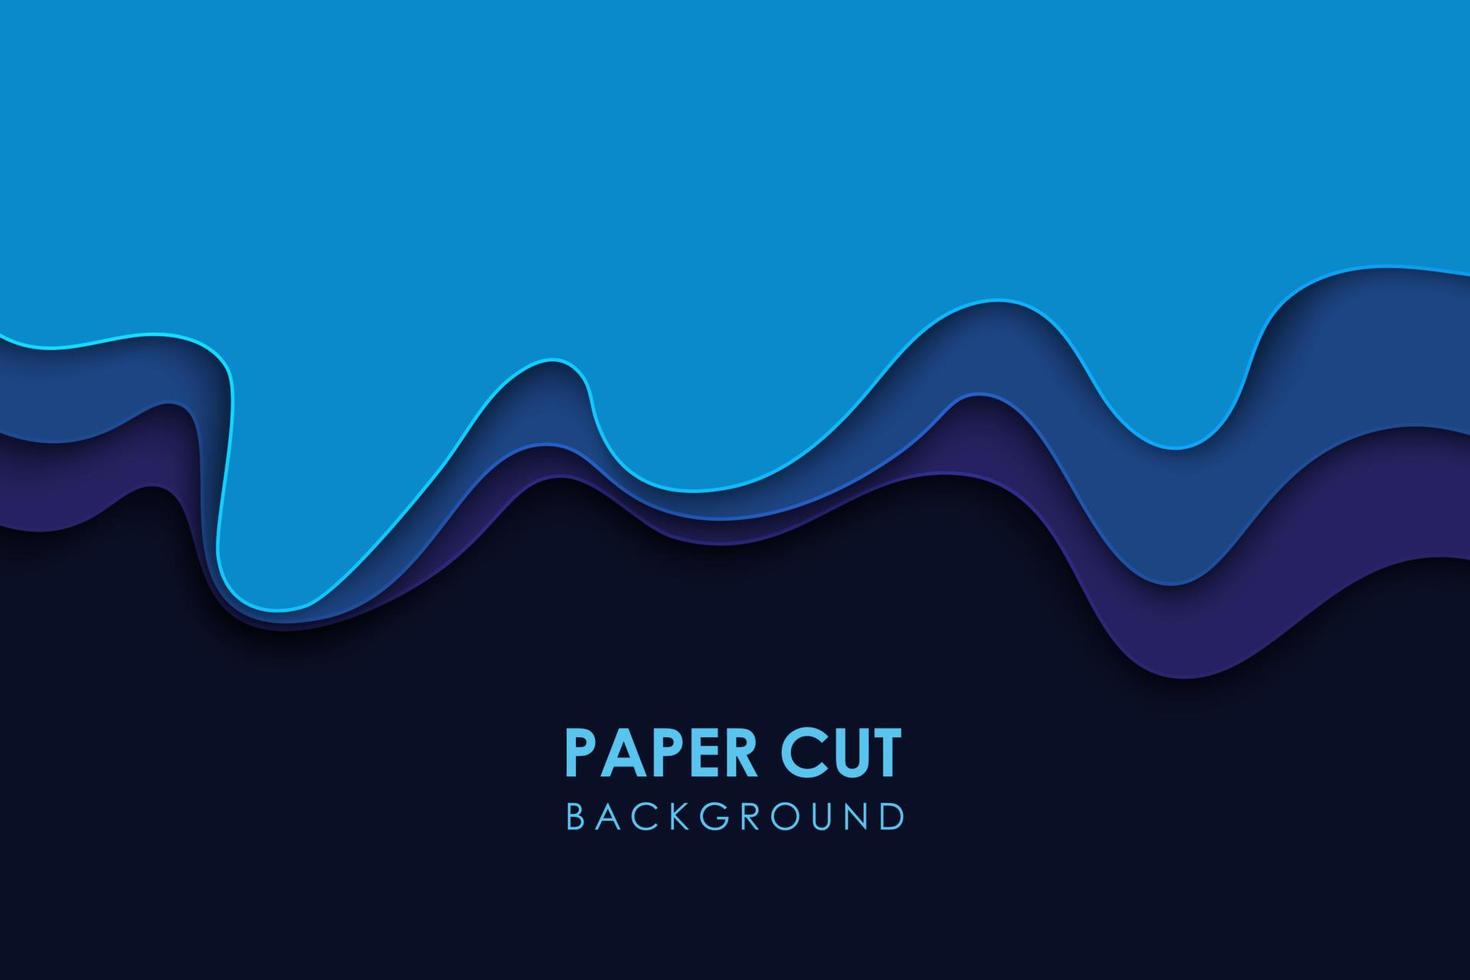 topographie géométrique ondulée découpée dans du papier ou motif de dégradé géométrique liquide coupé en papier sur fond bleu 3d multicouche vecteur eps10